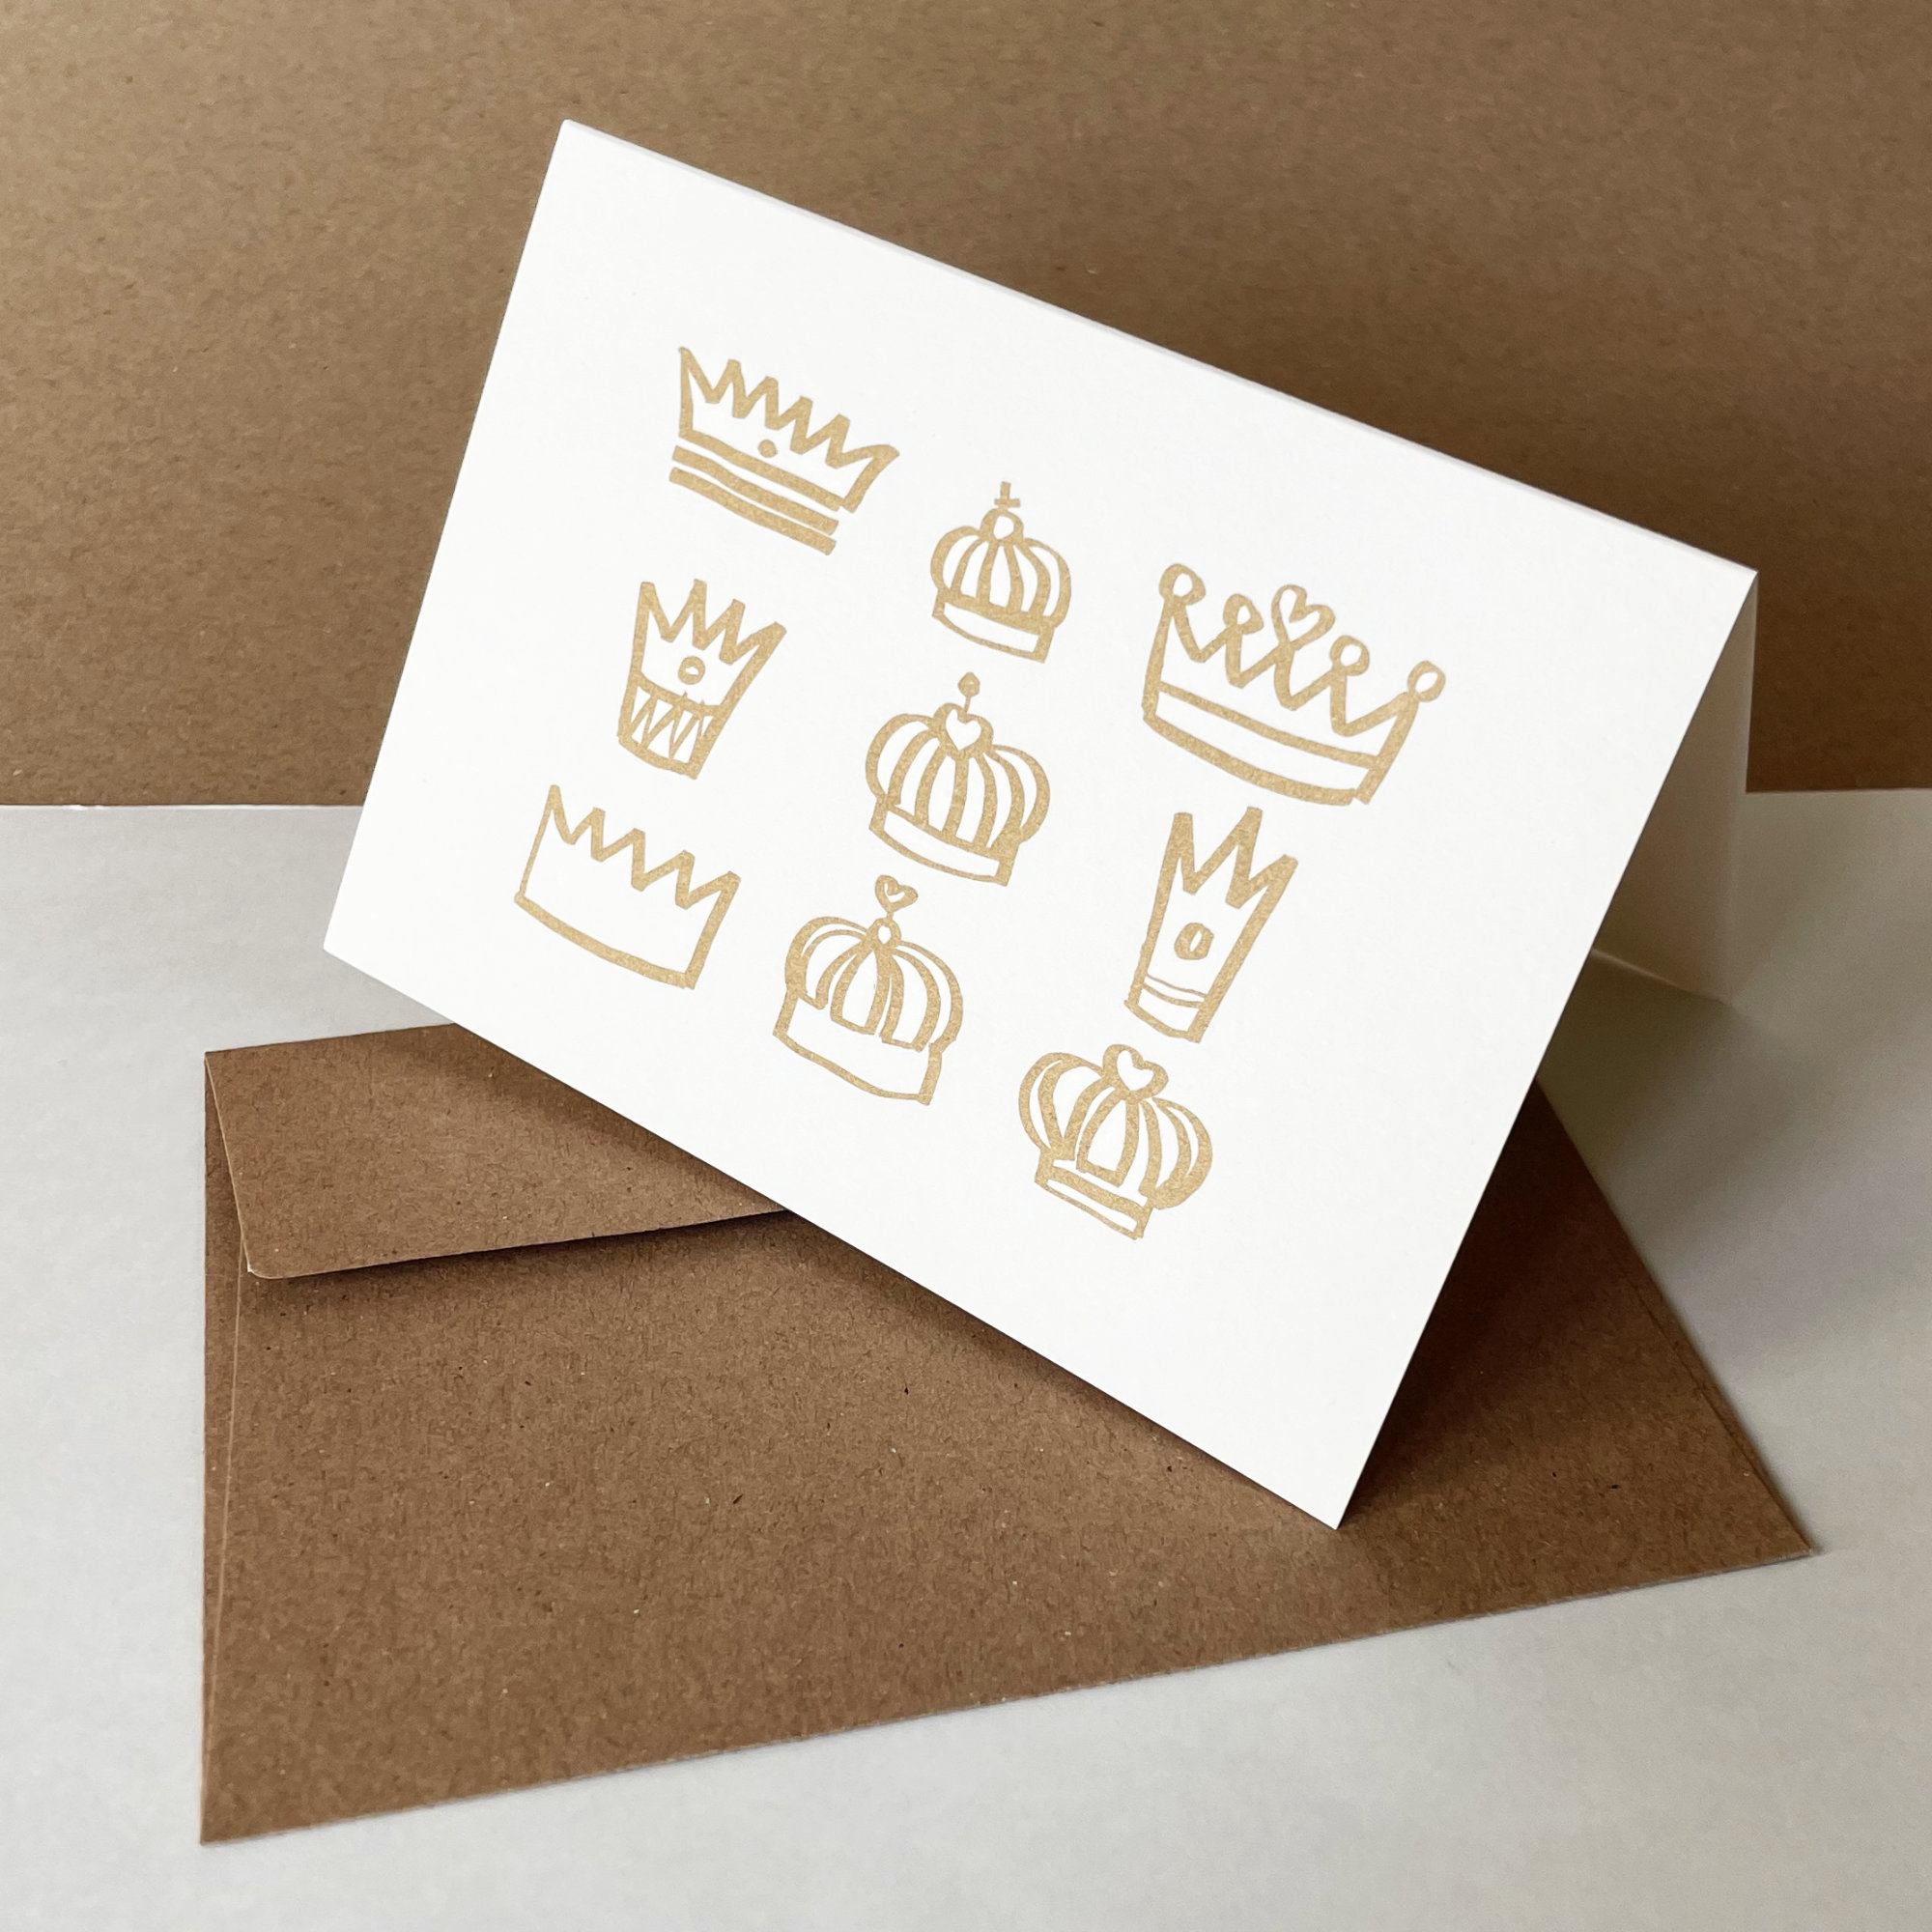 Kronen für alle! golden gedruckte Grußkarten mit braunen Recyclingkuverts